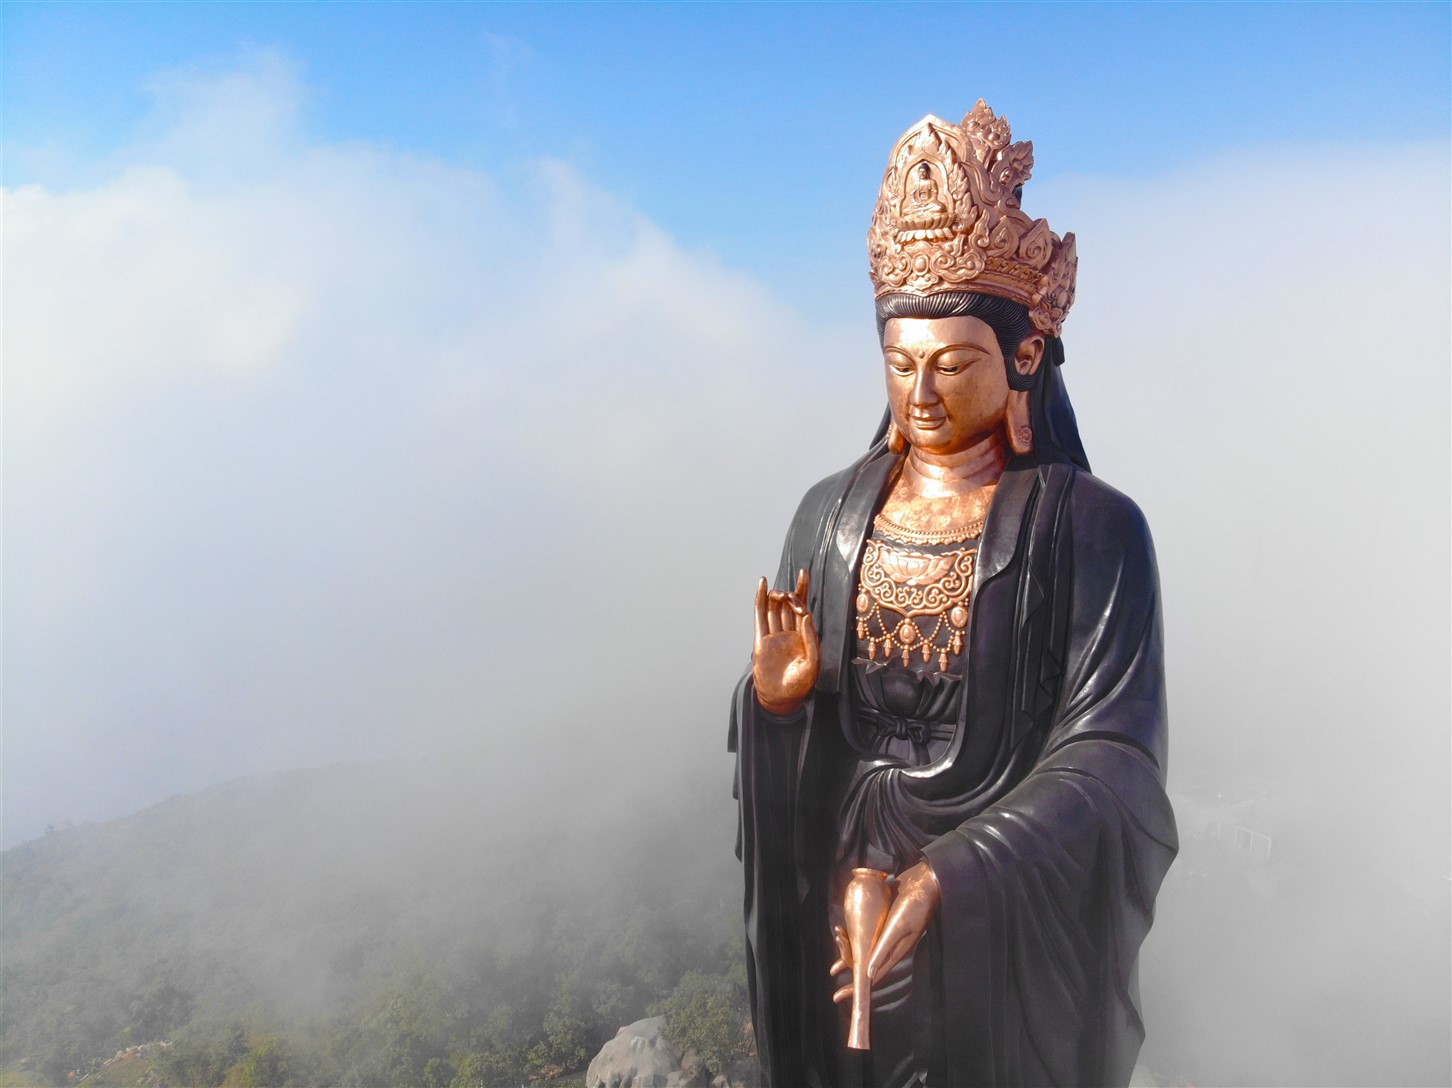 Tượng Phật Bà bằng đồng cao nhất Châu Á: Hãy đến và trải nghiệm tượng Phật Bà bằng đồng cao nhất Châu Á, một kiệt tác nghệ thuật được chế tác bởi những nghệ nhân tài năng với kinh nghiệm và tâm huyết. Với chiều cao lên đến hàng chục mét, tượng sẽ làm say đắm người xem bởi sự vĩ đại và sắc sảo.